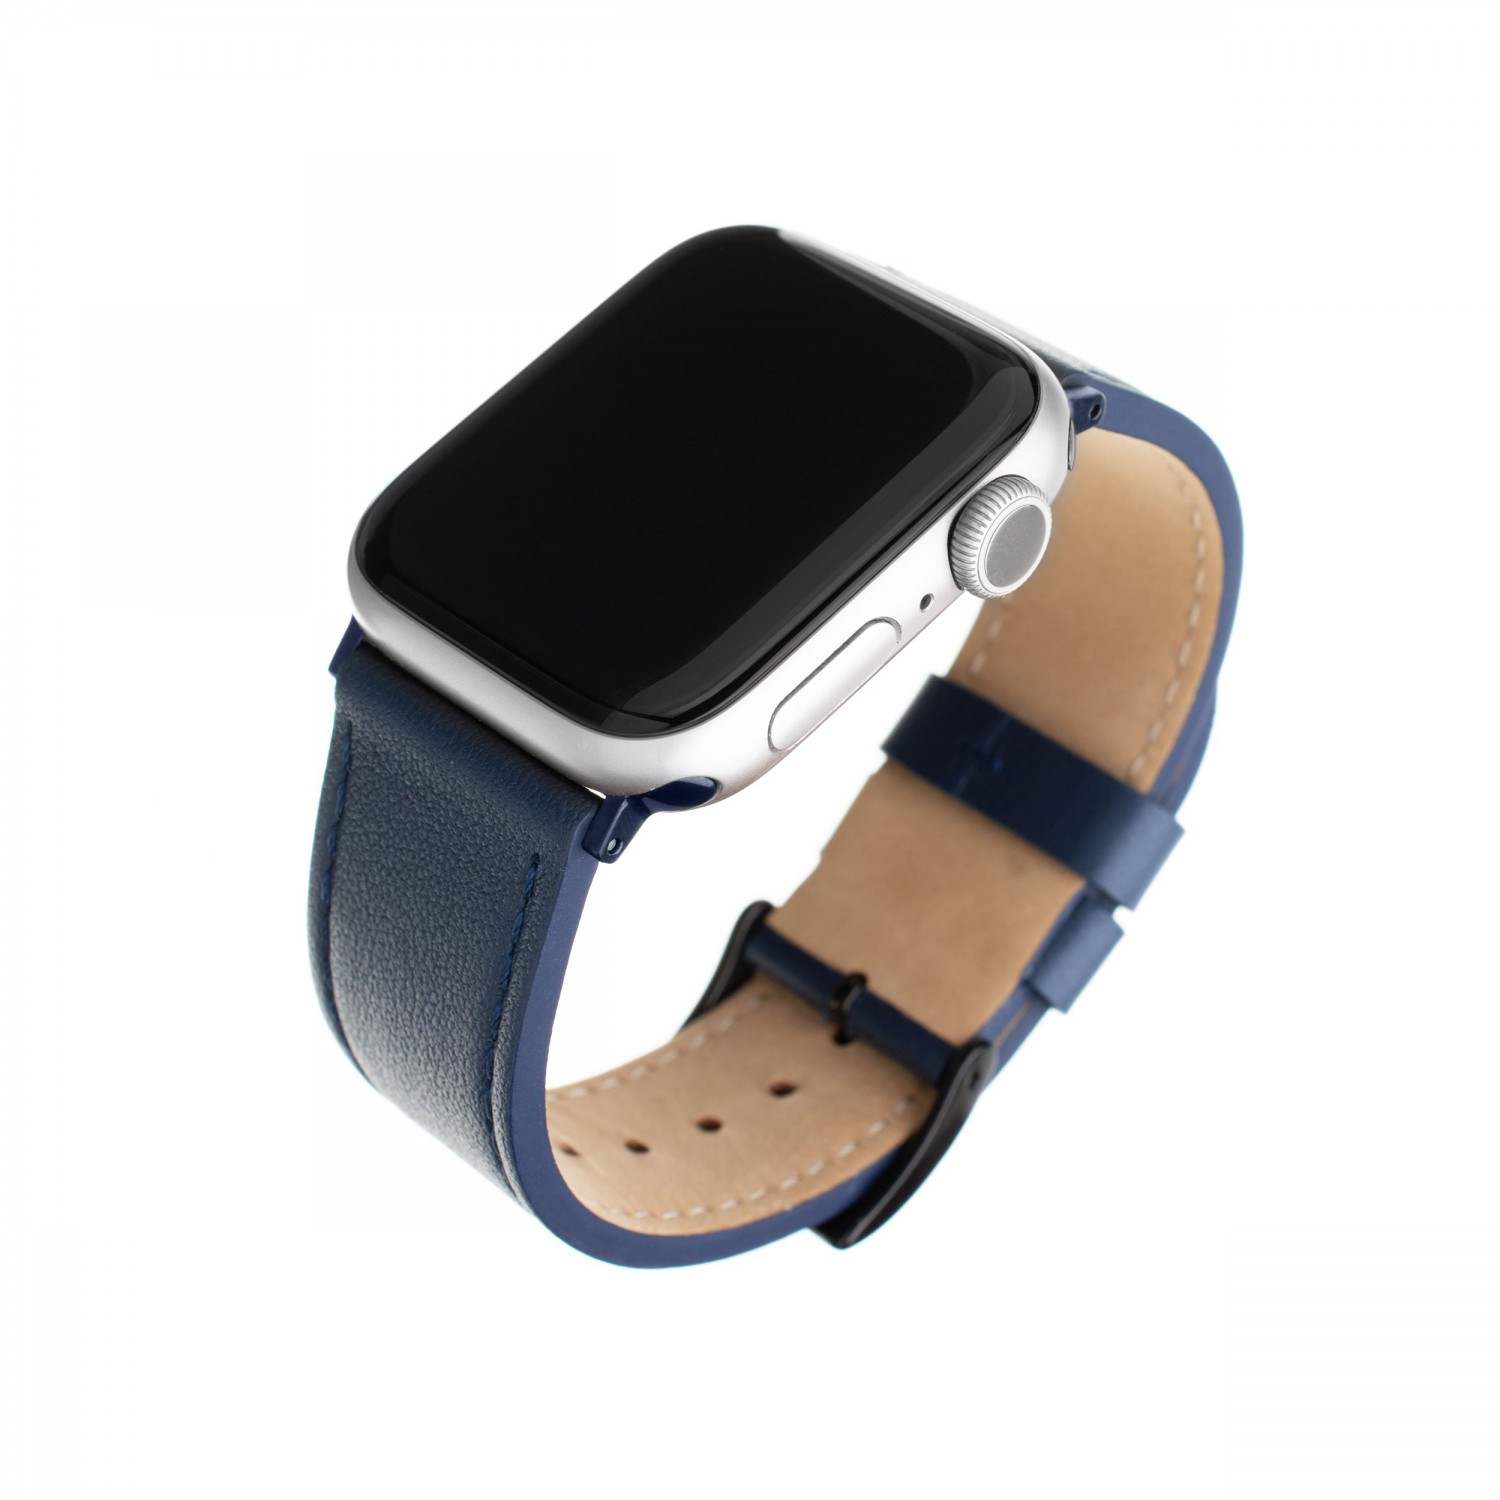 Kožený řemínek FIXED Leather Strap pro Apple Watch 42mm/44mm, modrá.
Řemínek je navržen jako doplněk pro všechny generace Apple Watch 42 a 44 mm.
Vlastnosti:

snadná výměna pásku
řemínek pro Smartwatch
stylový design
kožený pásek
kvalitní materiál
jednoduché zapínání
pro obvod zápěstí 16,5 - 21,5 cm
kování i spony z ocelové slitiny

Materiál: z pravé hovězí kůže
Barva: blue / modrá
Kompatibilní: Apple Watch Series 1 42mm, Apple Watch Series 2 42mm, Apple Watch Series 3 42mm, Apple Watch Series 4 44mm, Apple Watch Series 5 44mm, Apple Watch Series 6 44mm, Apple Watch...